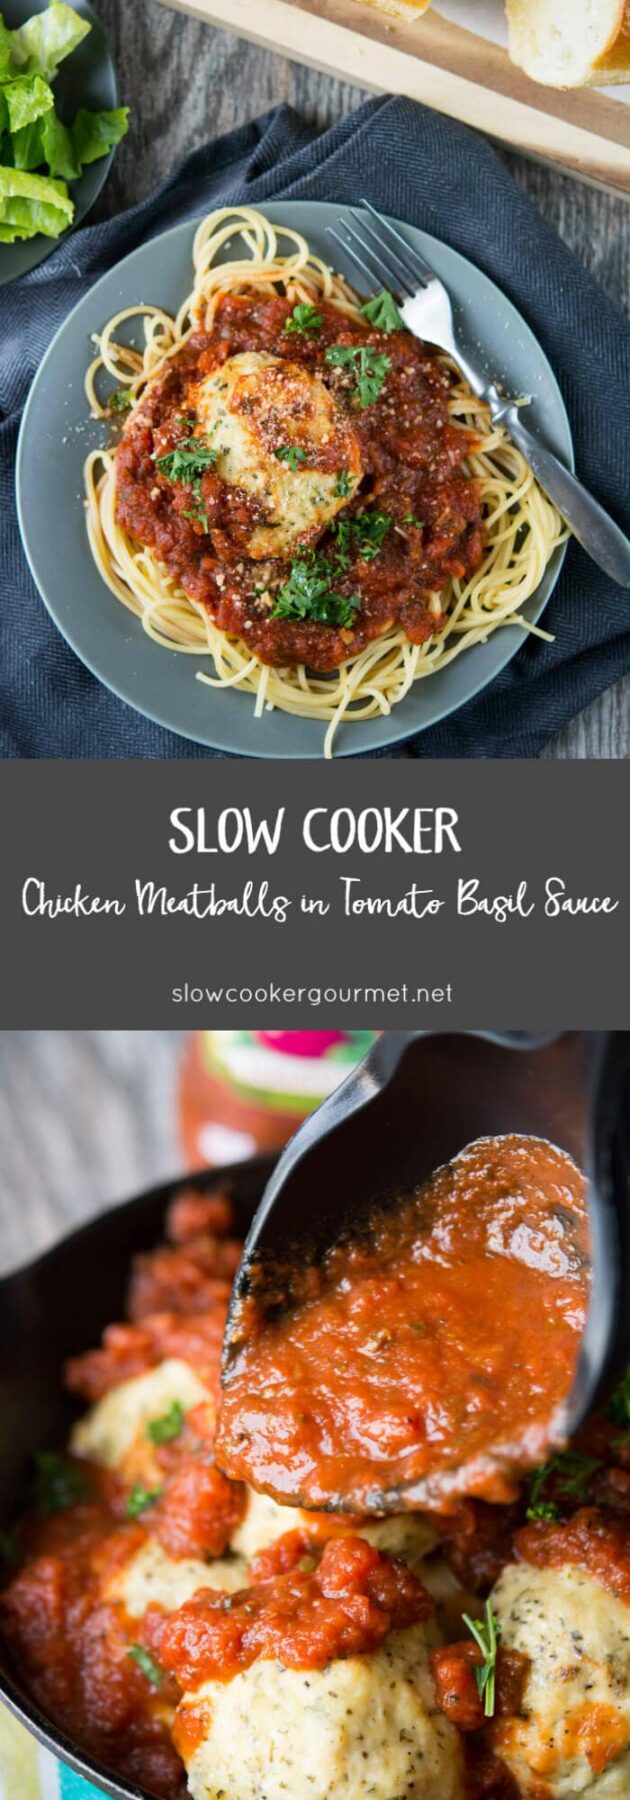 Slow Cooker Chicken Meatballs